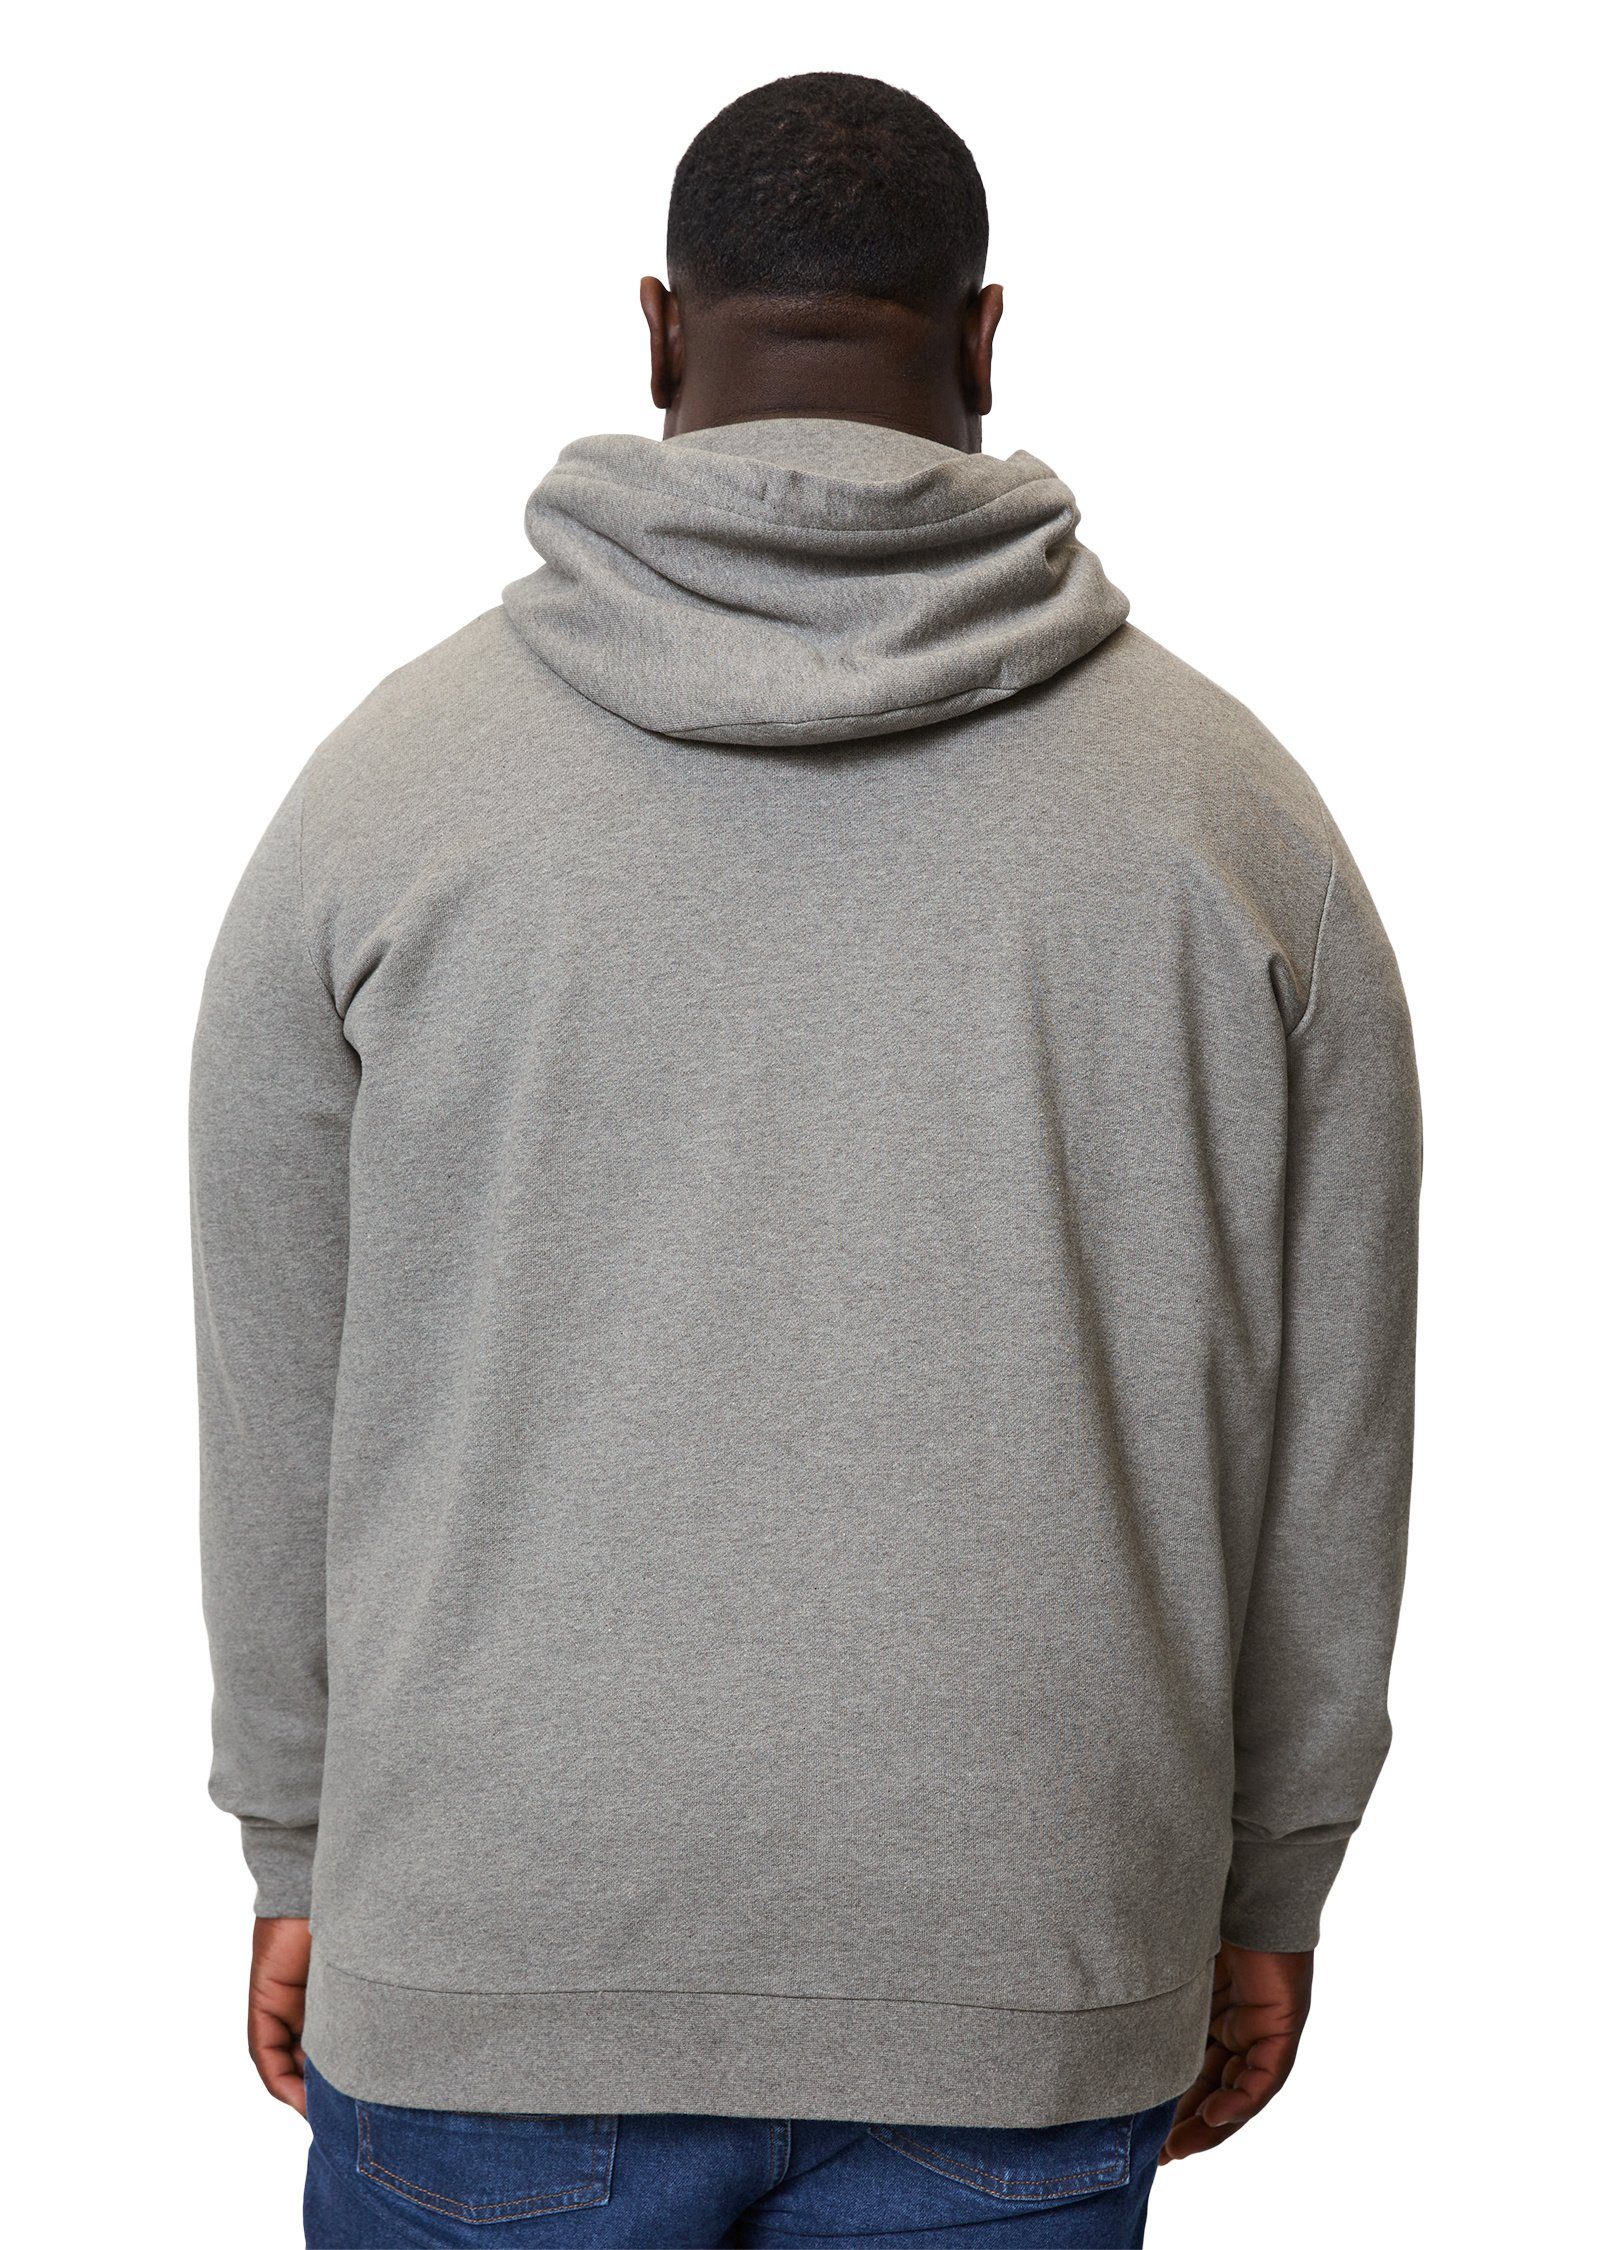 Marc O'Polo Sweatshirt grau hochwertiger Bio-Baumwolle aus